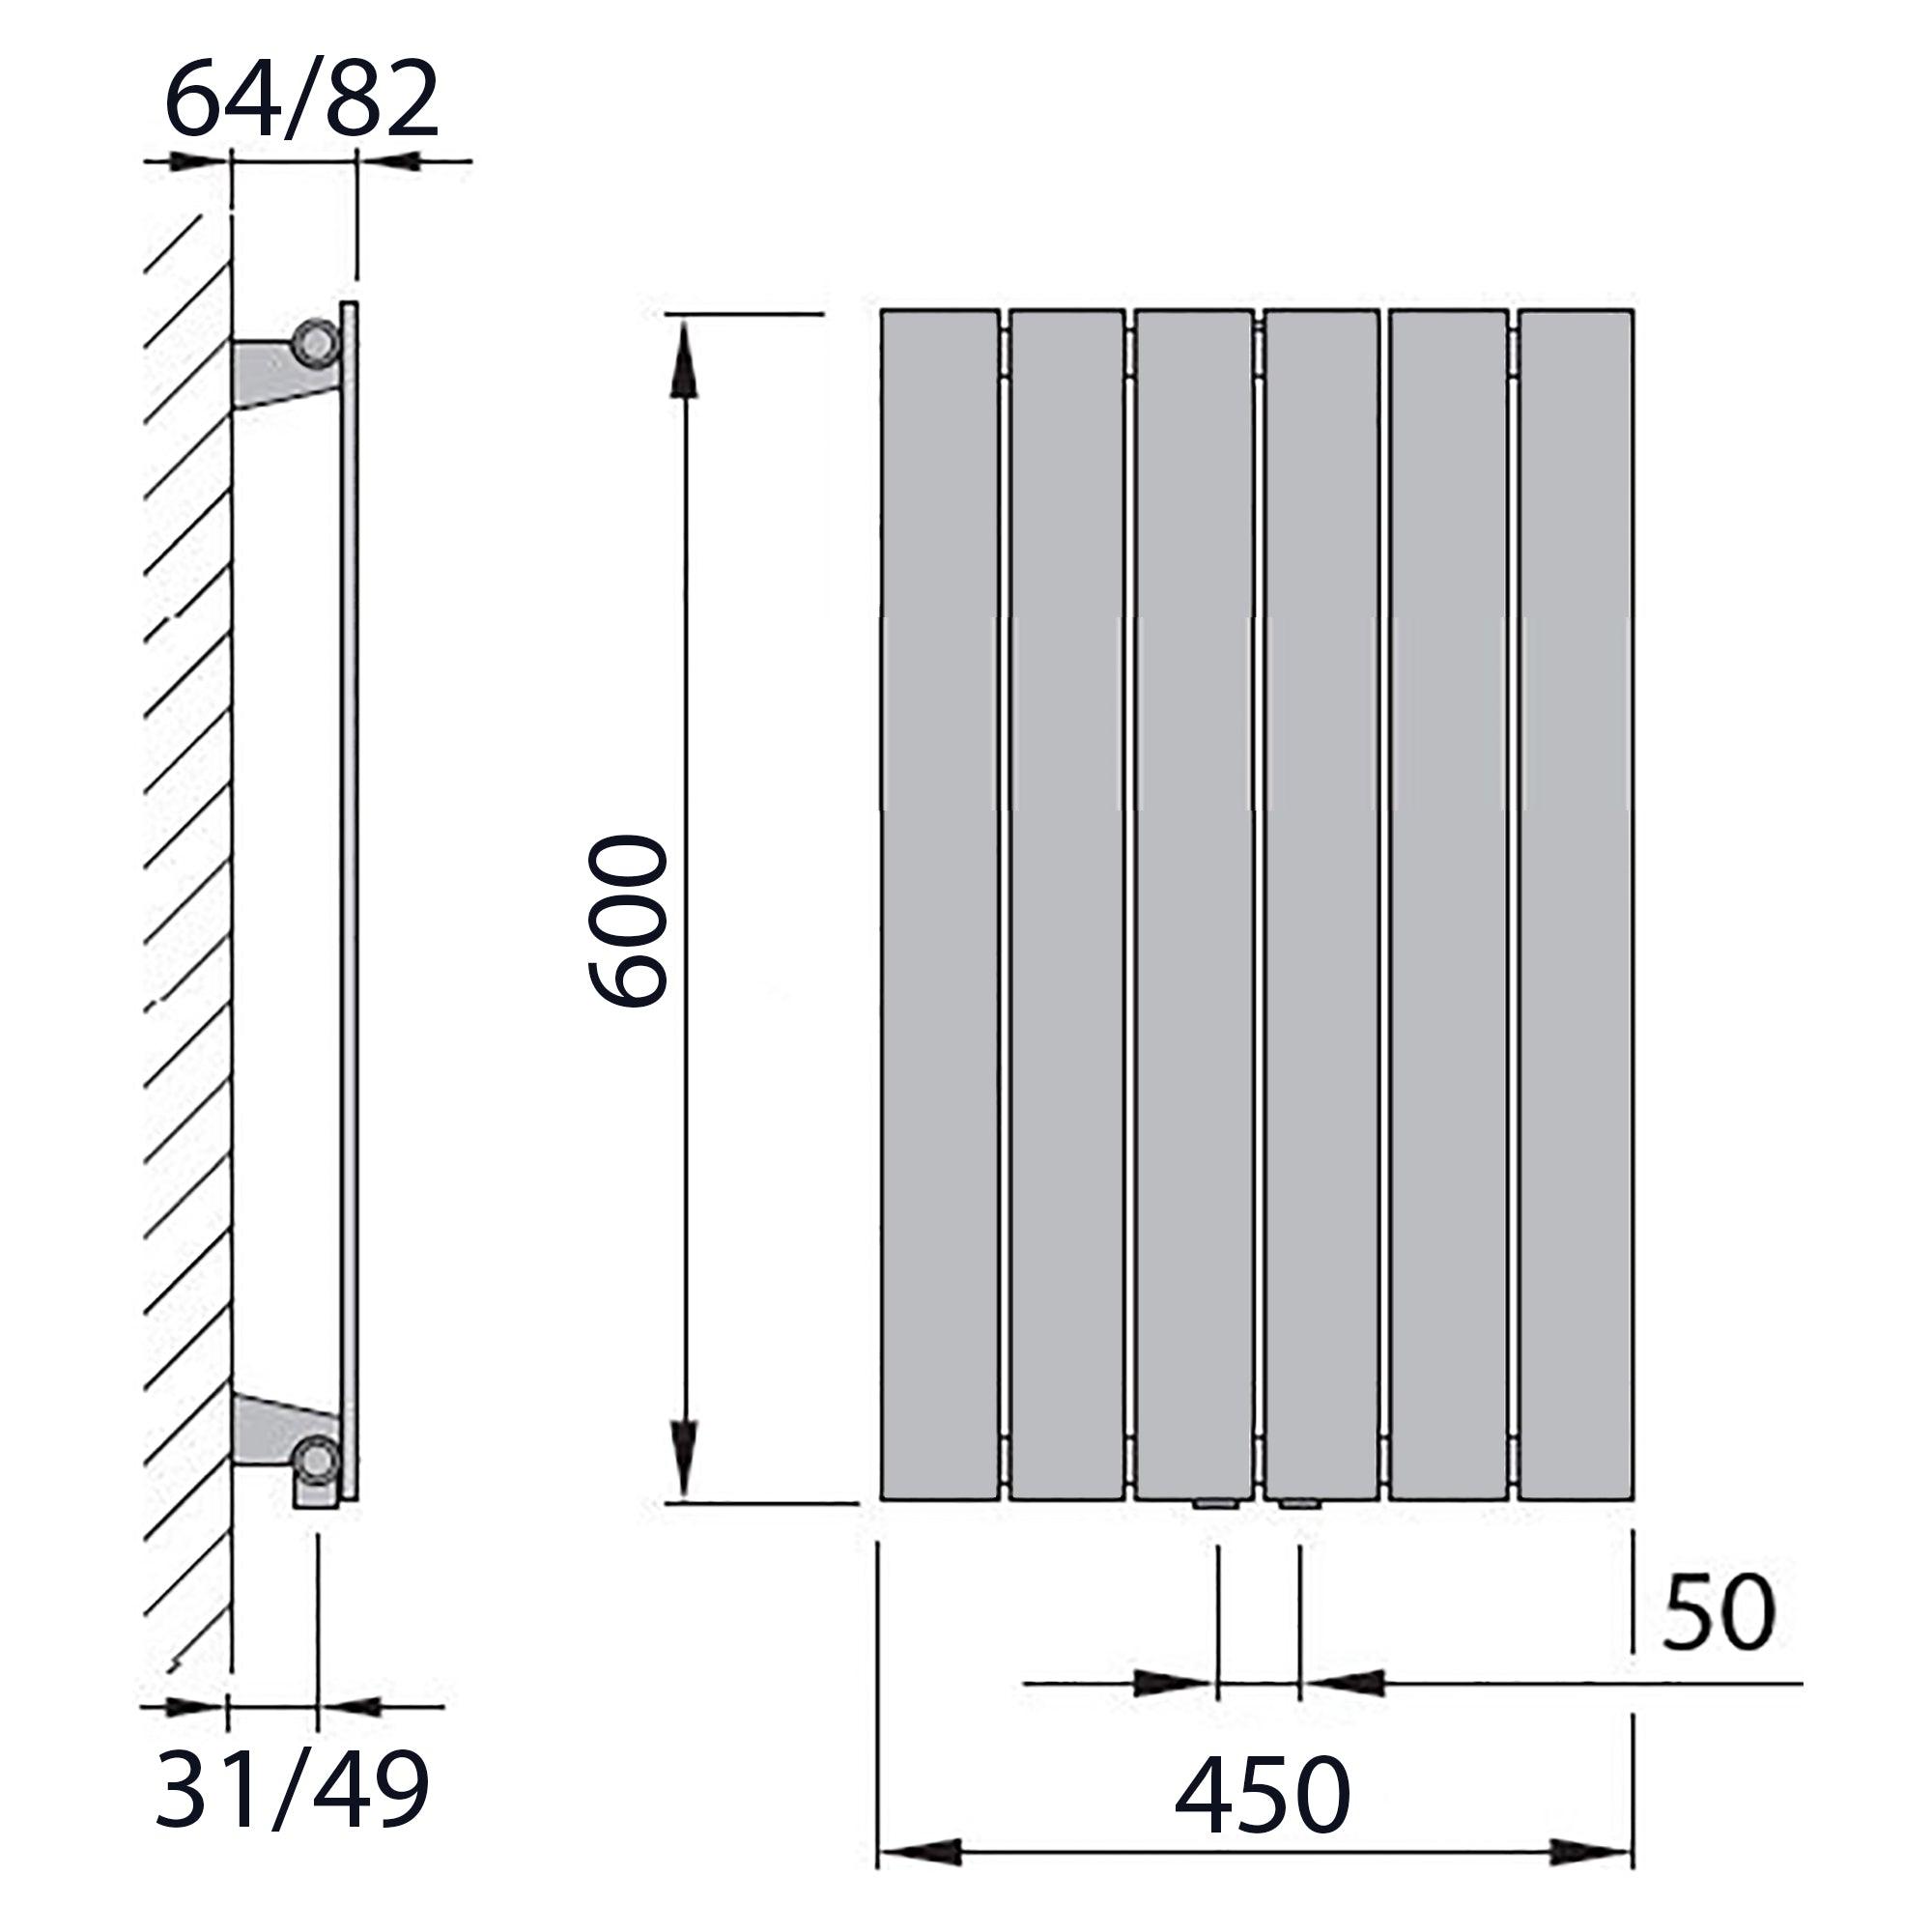 Design Paneelheizkörper vertikal 600 x 450 weiß Heizkörper Badheizkörper flach Badezimmer Heizung technische Zeichnung - heizkoerper.shop